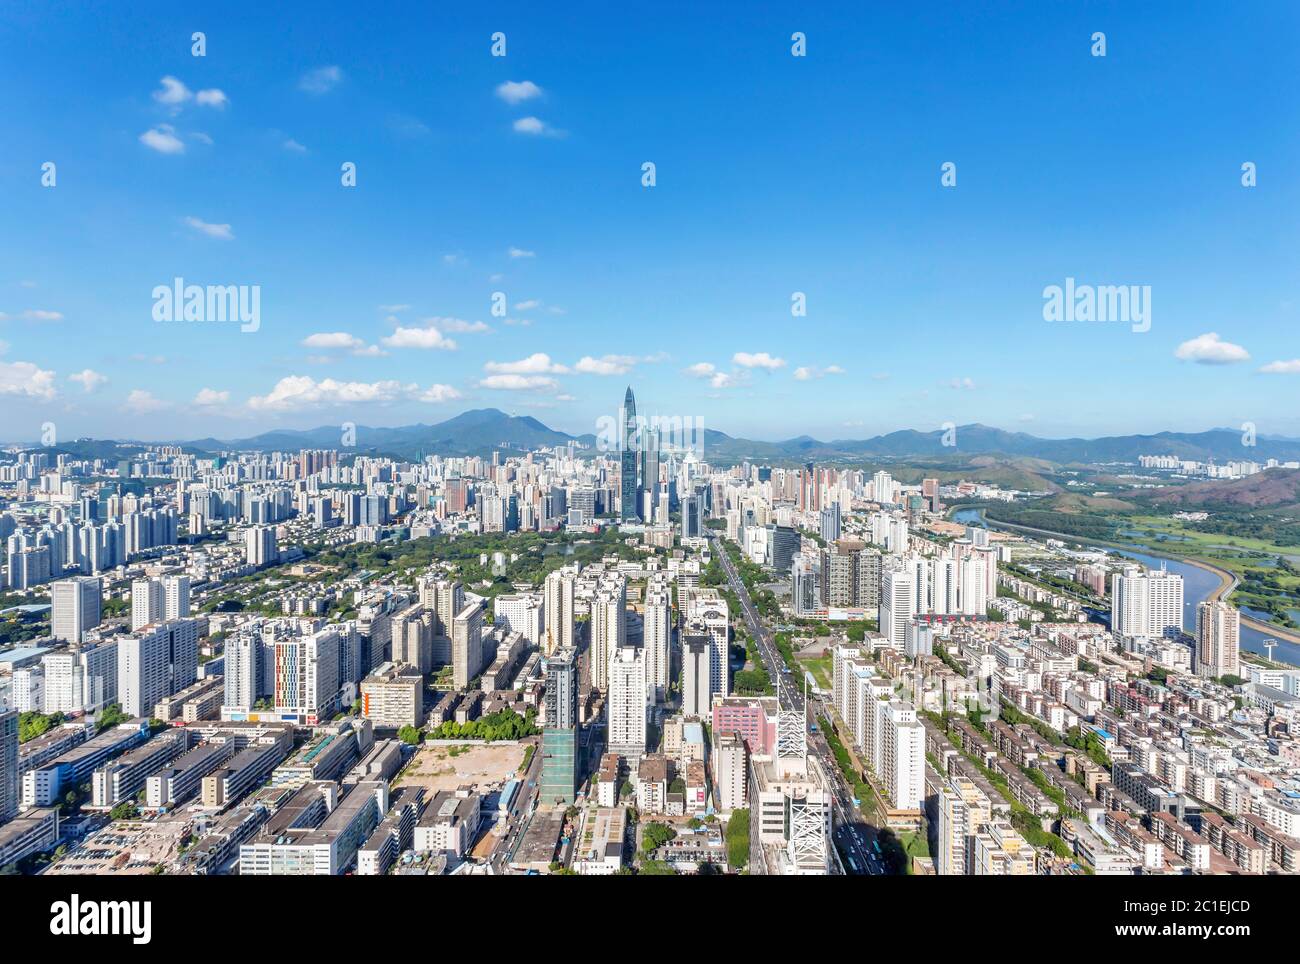 skyline of modern city shenzhen Stock Photo